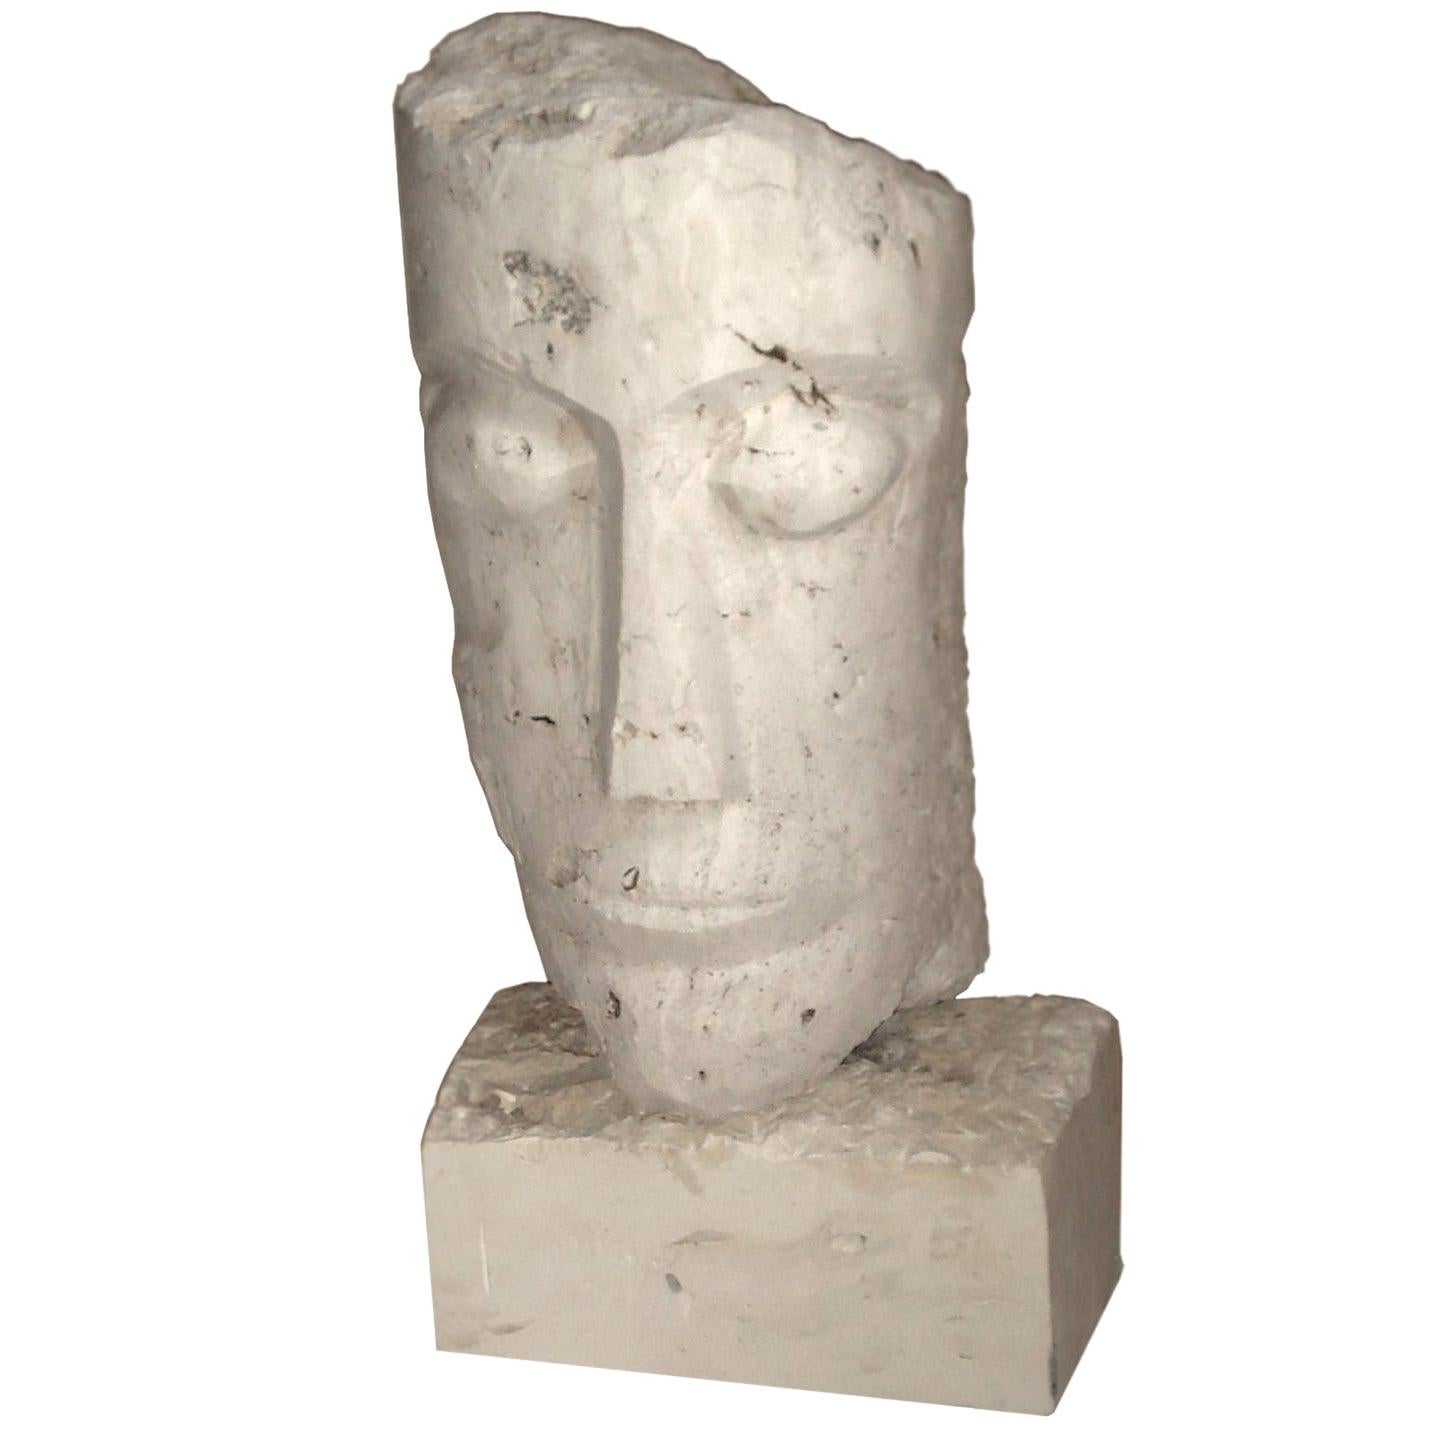 Große kubistische geschnitzte Steinskulptur, die einen Mannkopf darstellt